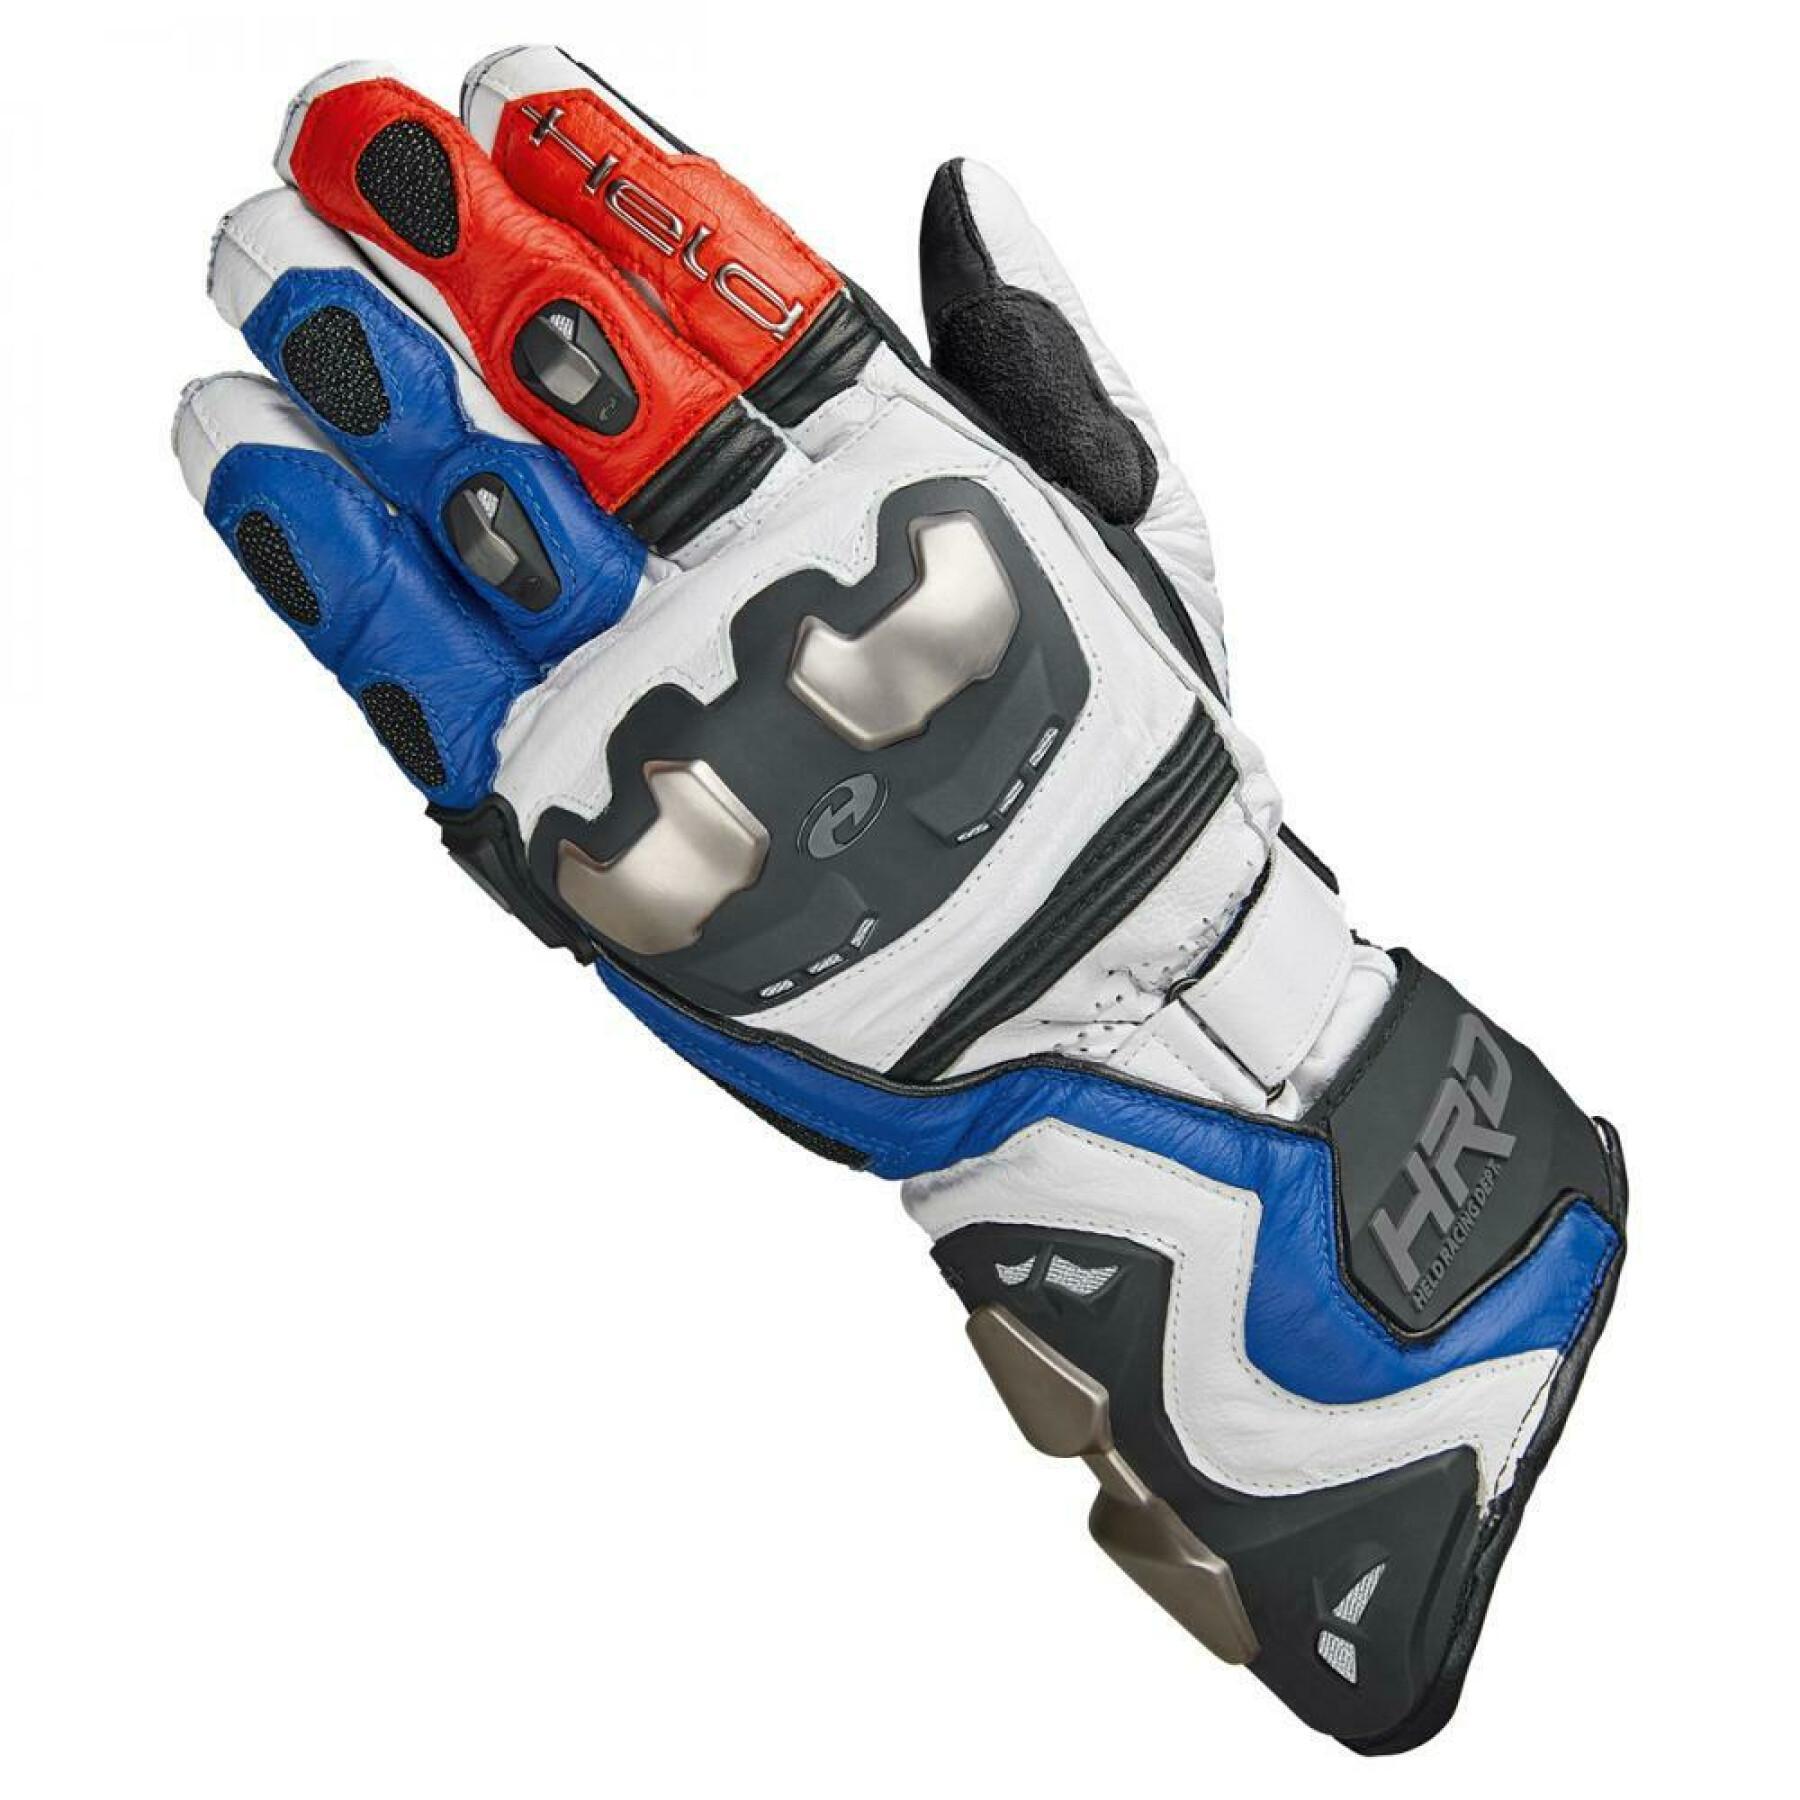 Handskar för motorcykelracing Held titan rr